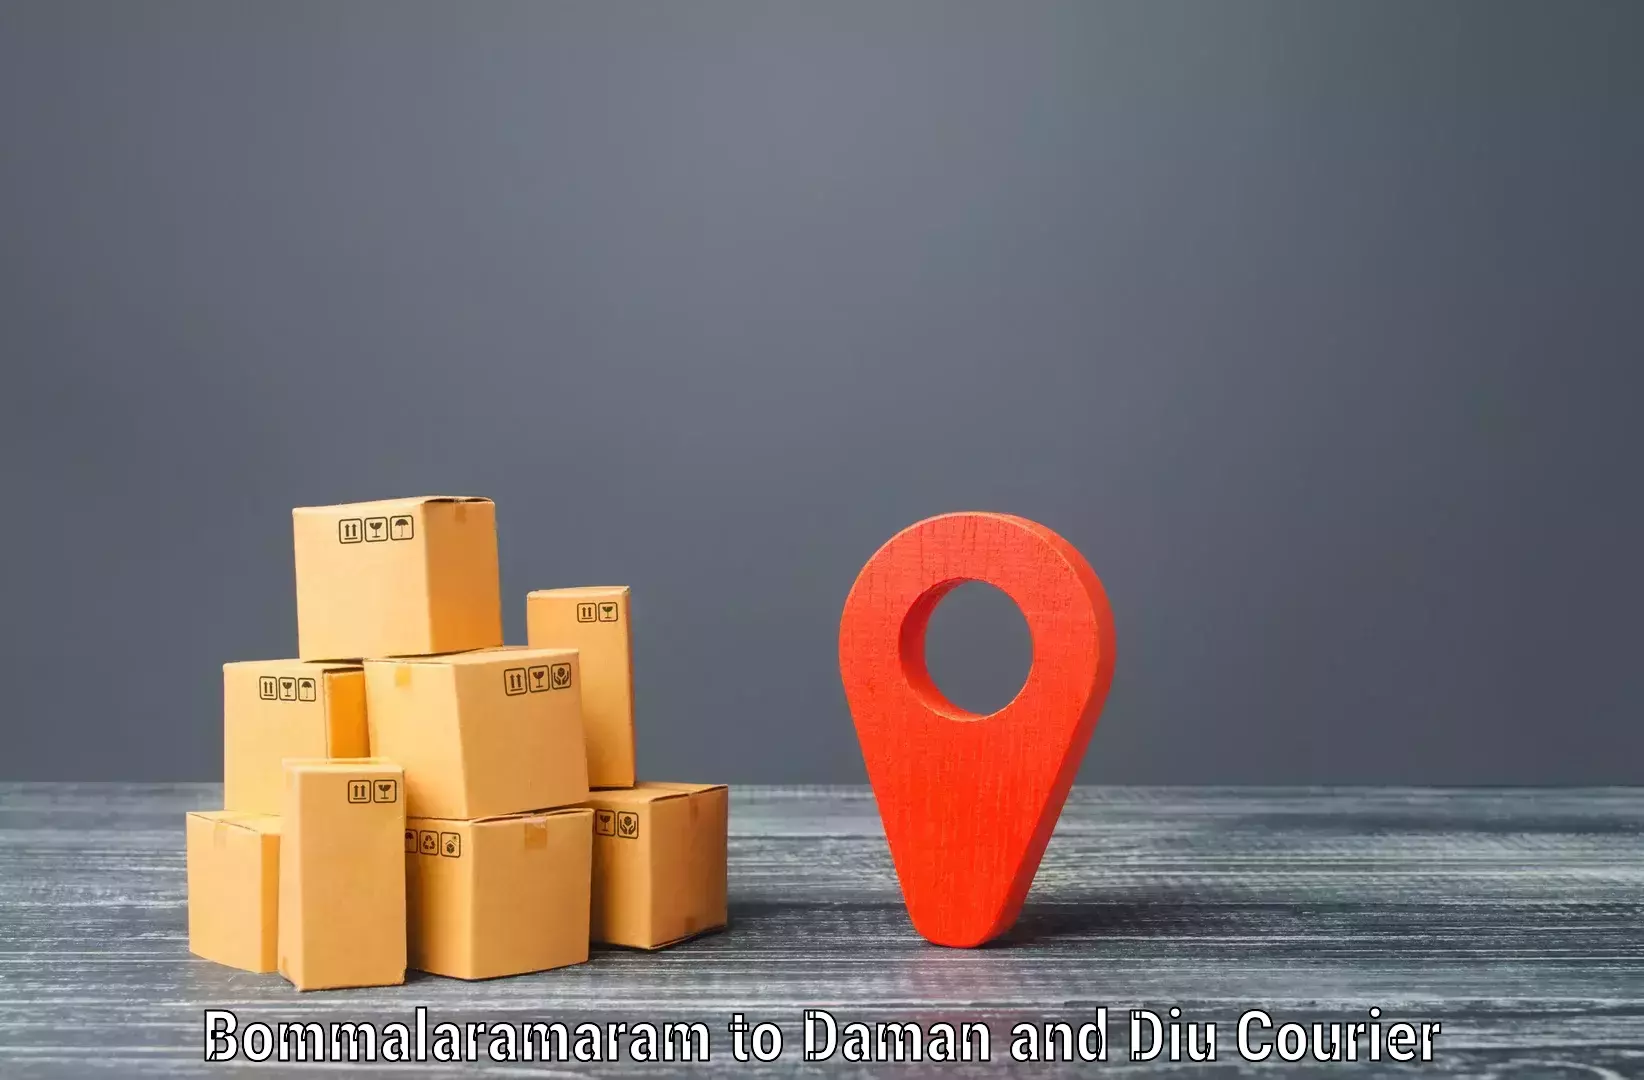 Comprehensive logistics Bommalaramaram to Daman and Diu